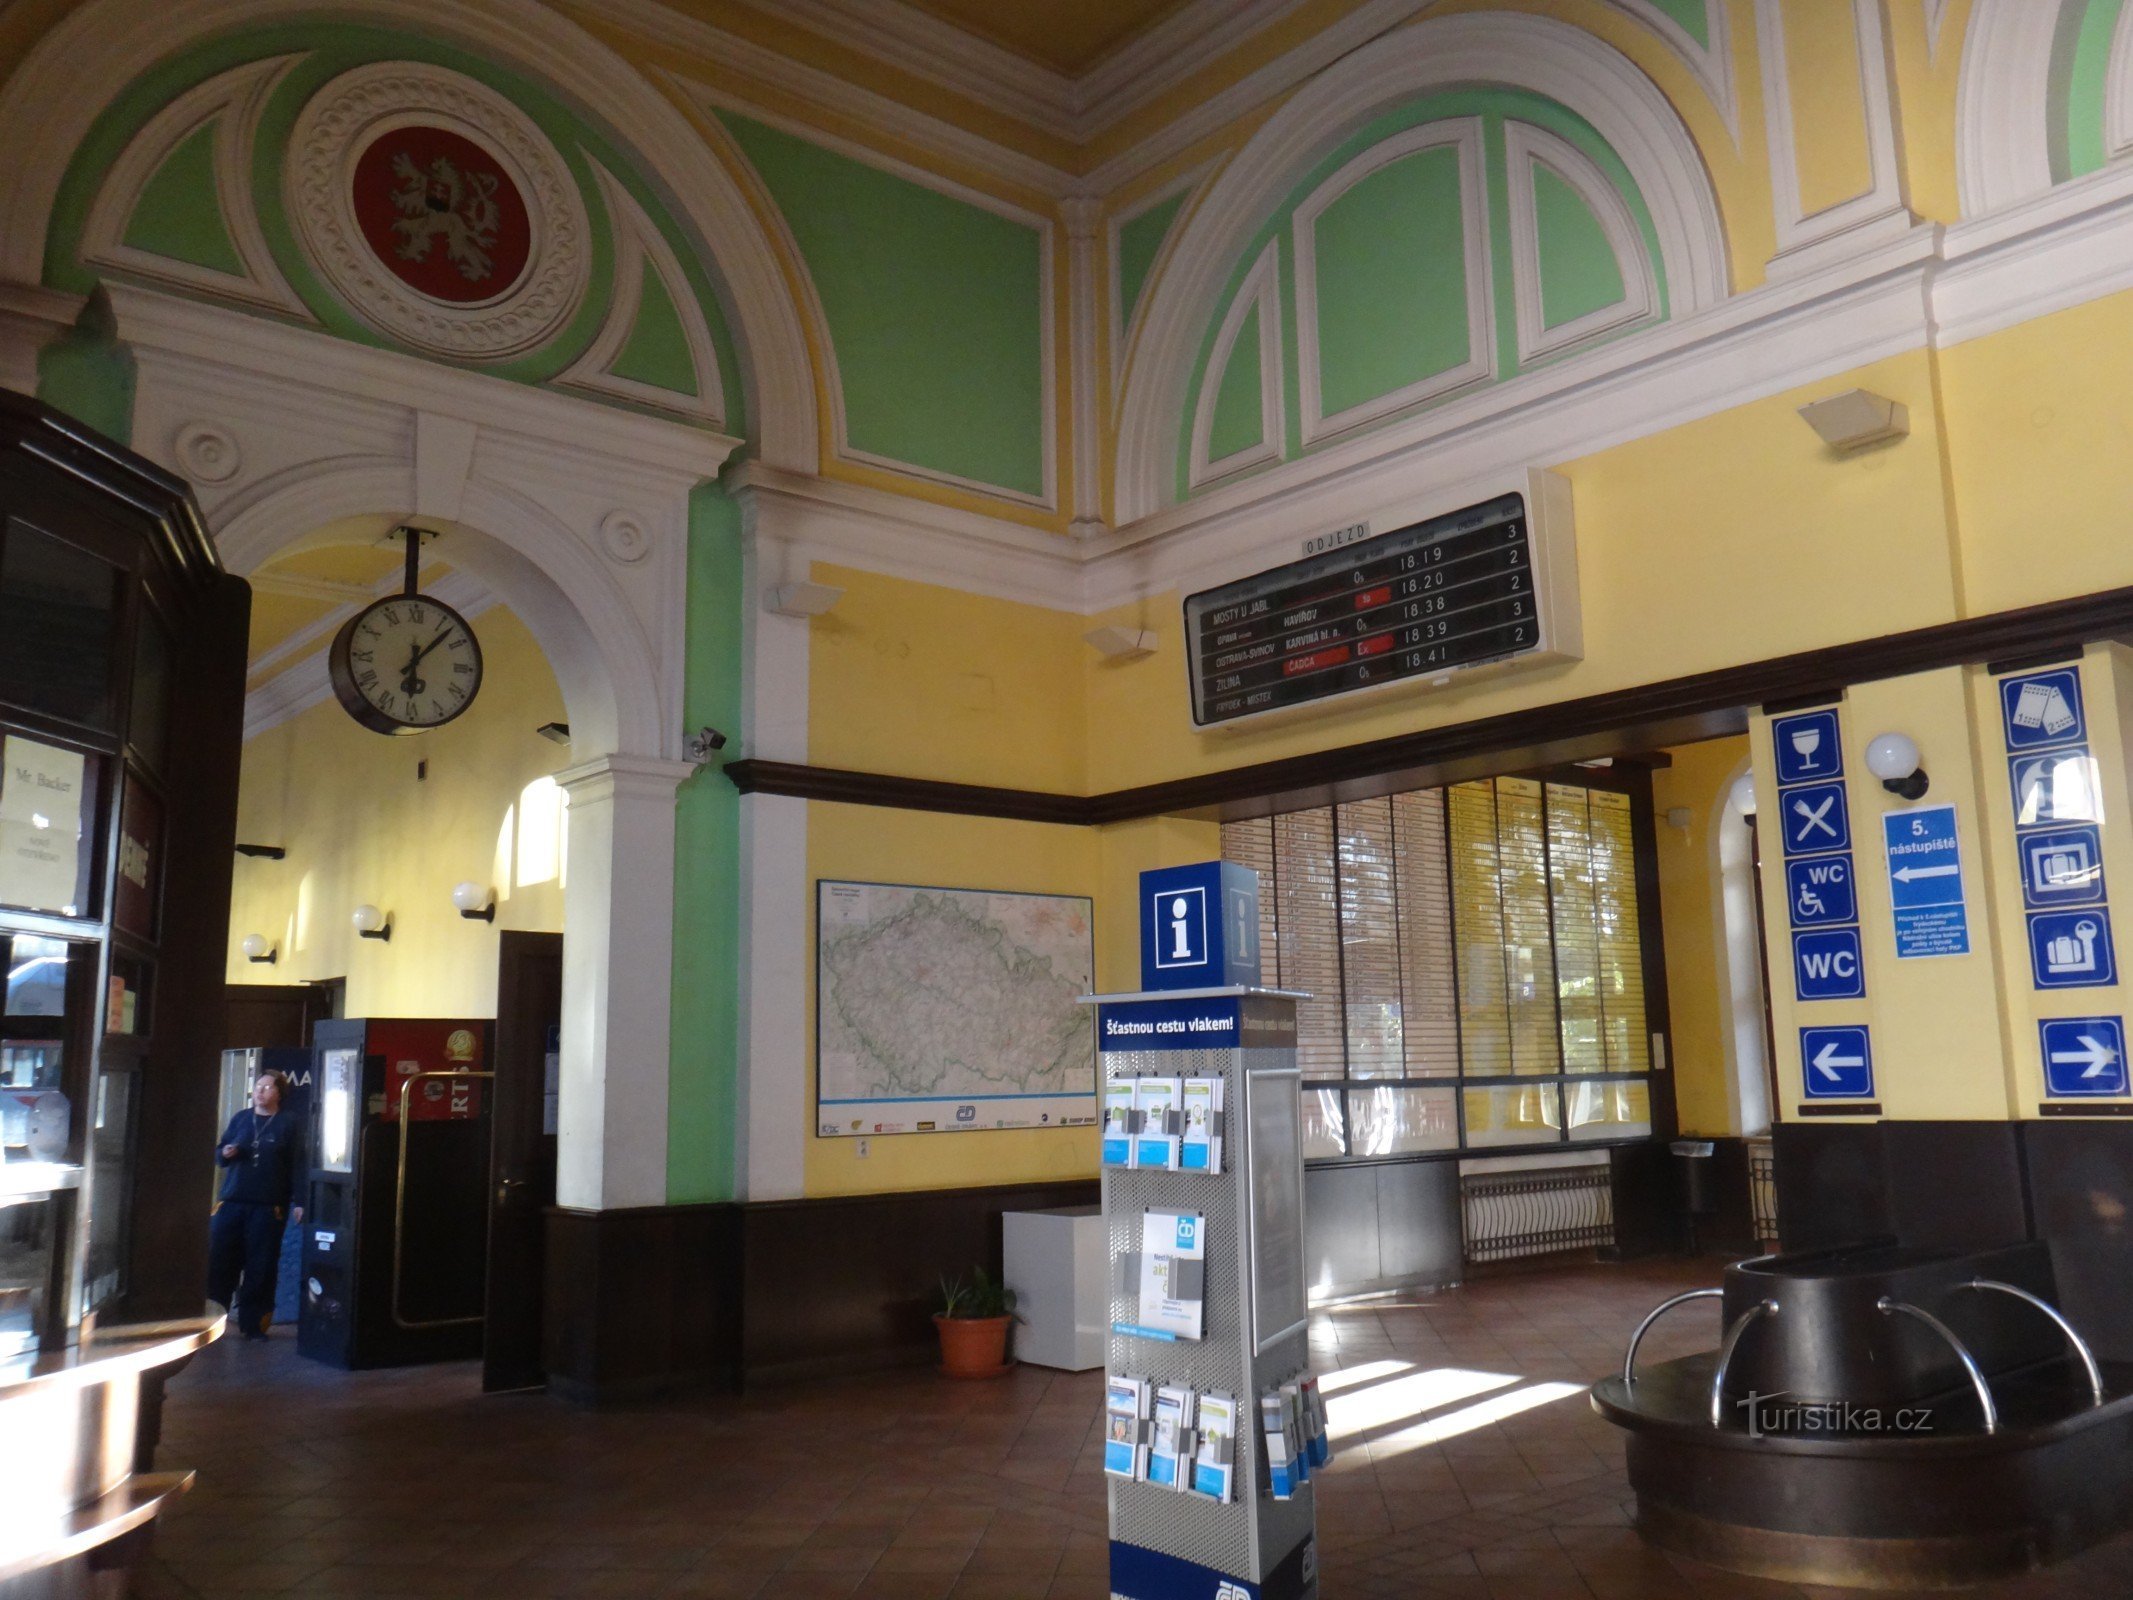 Český Těšín railway station interior